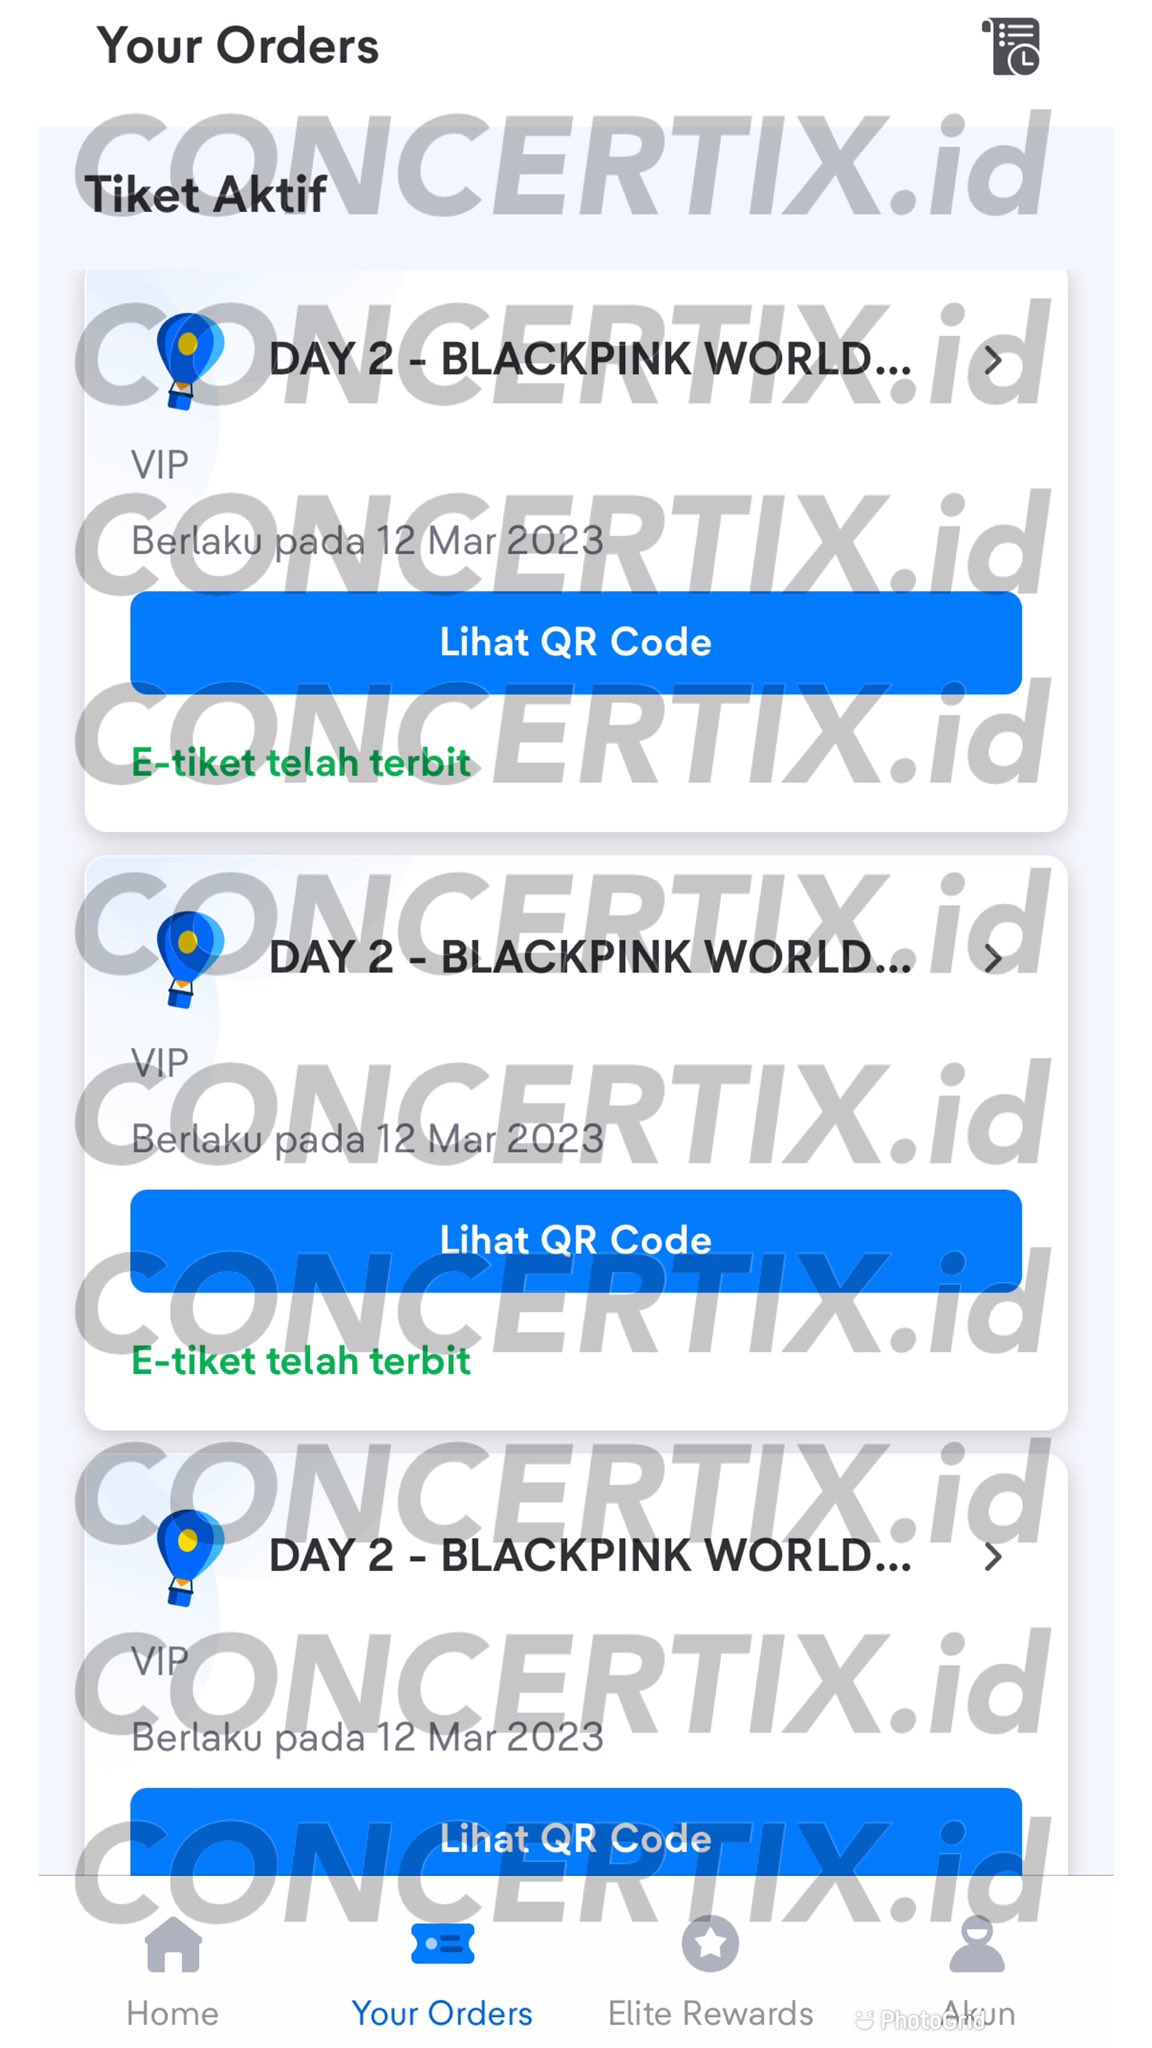 Concertix.id / READY TIKET KONSER COLDPLAY JAKARTA on X